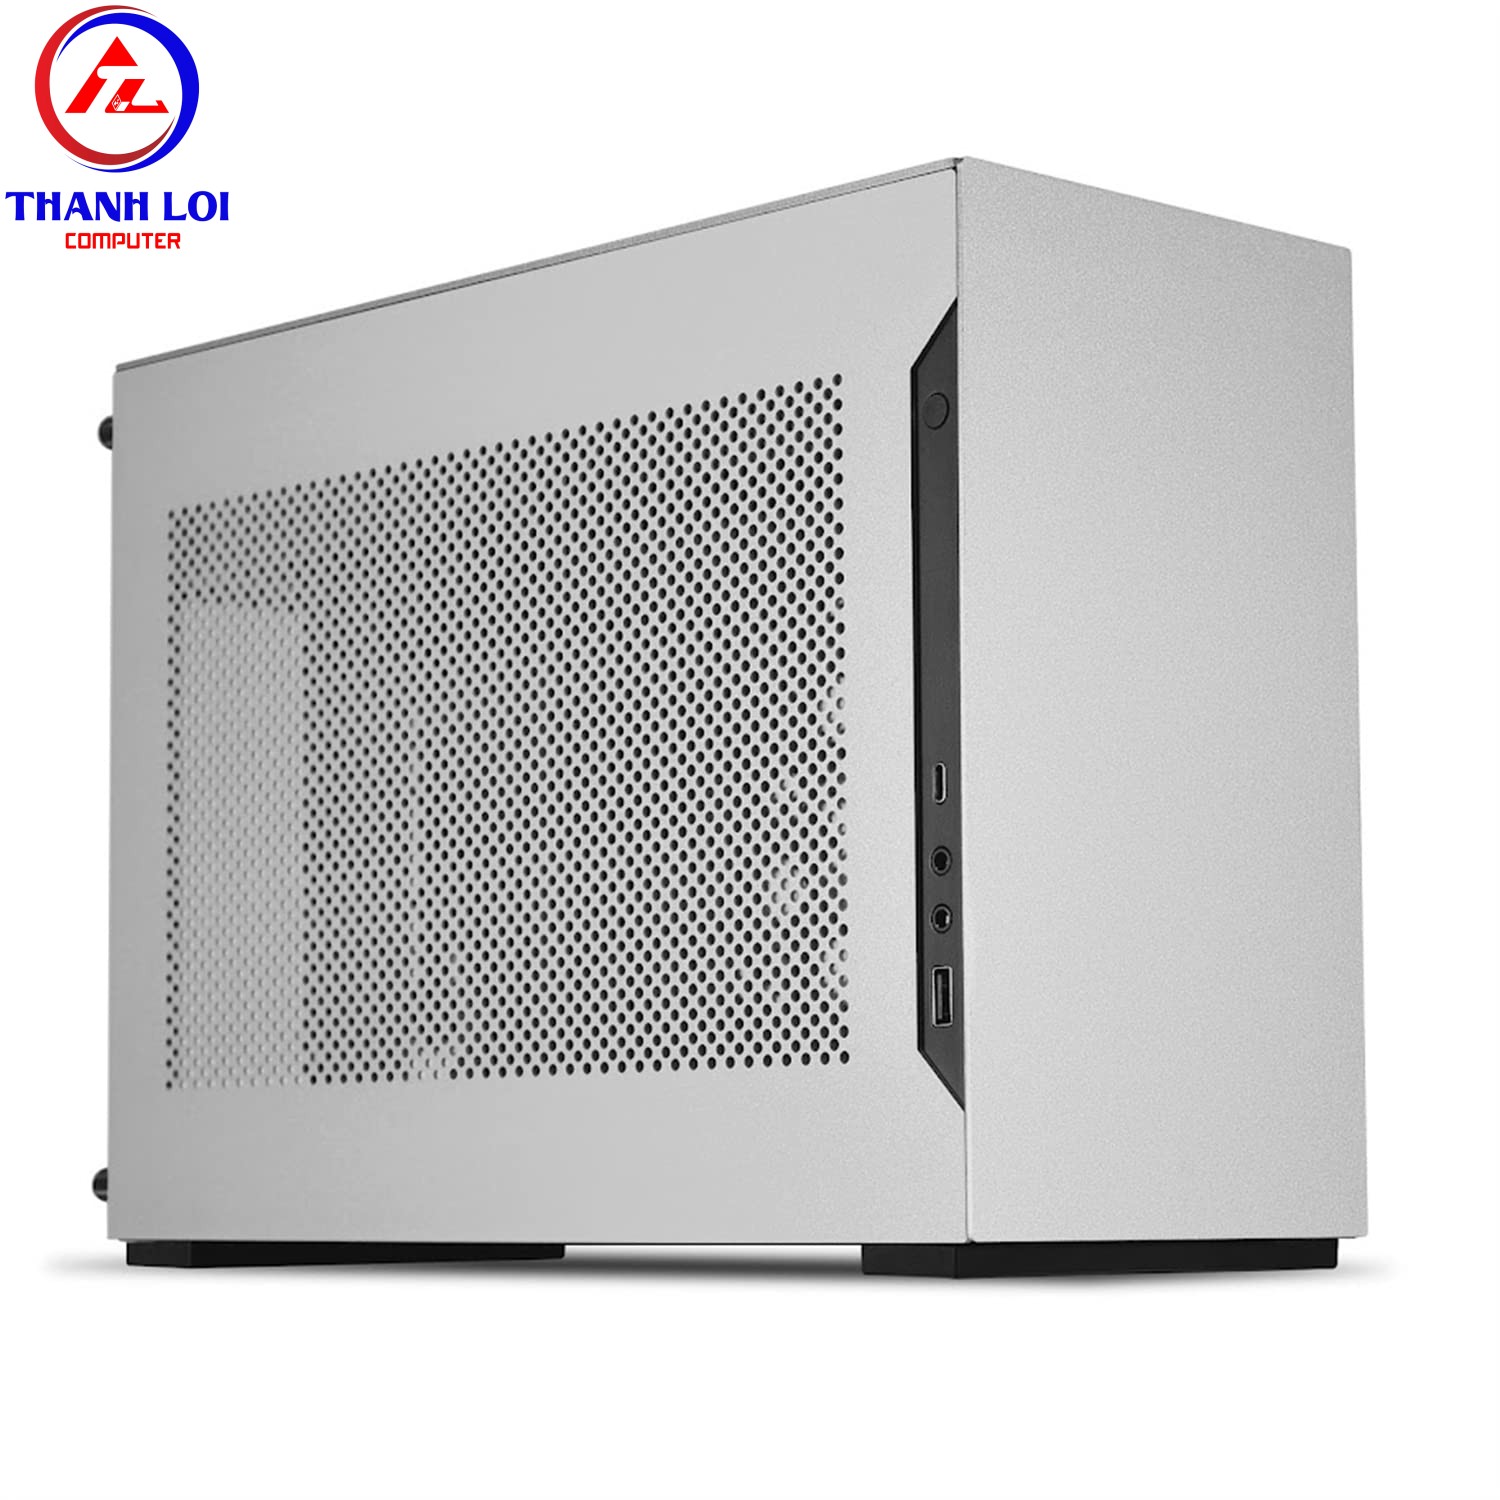 Vỏ Case Lian Li A4-H2O X4 – Silver, iTX Case